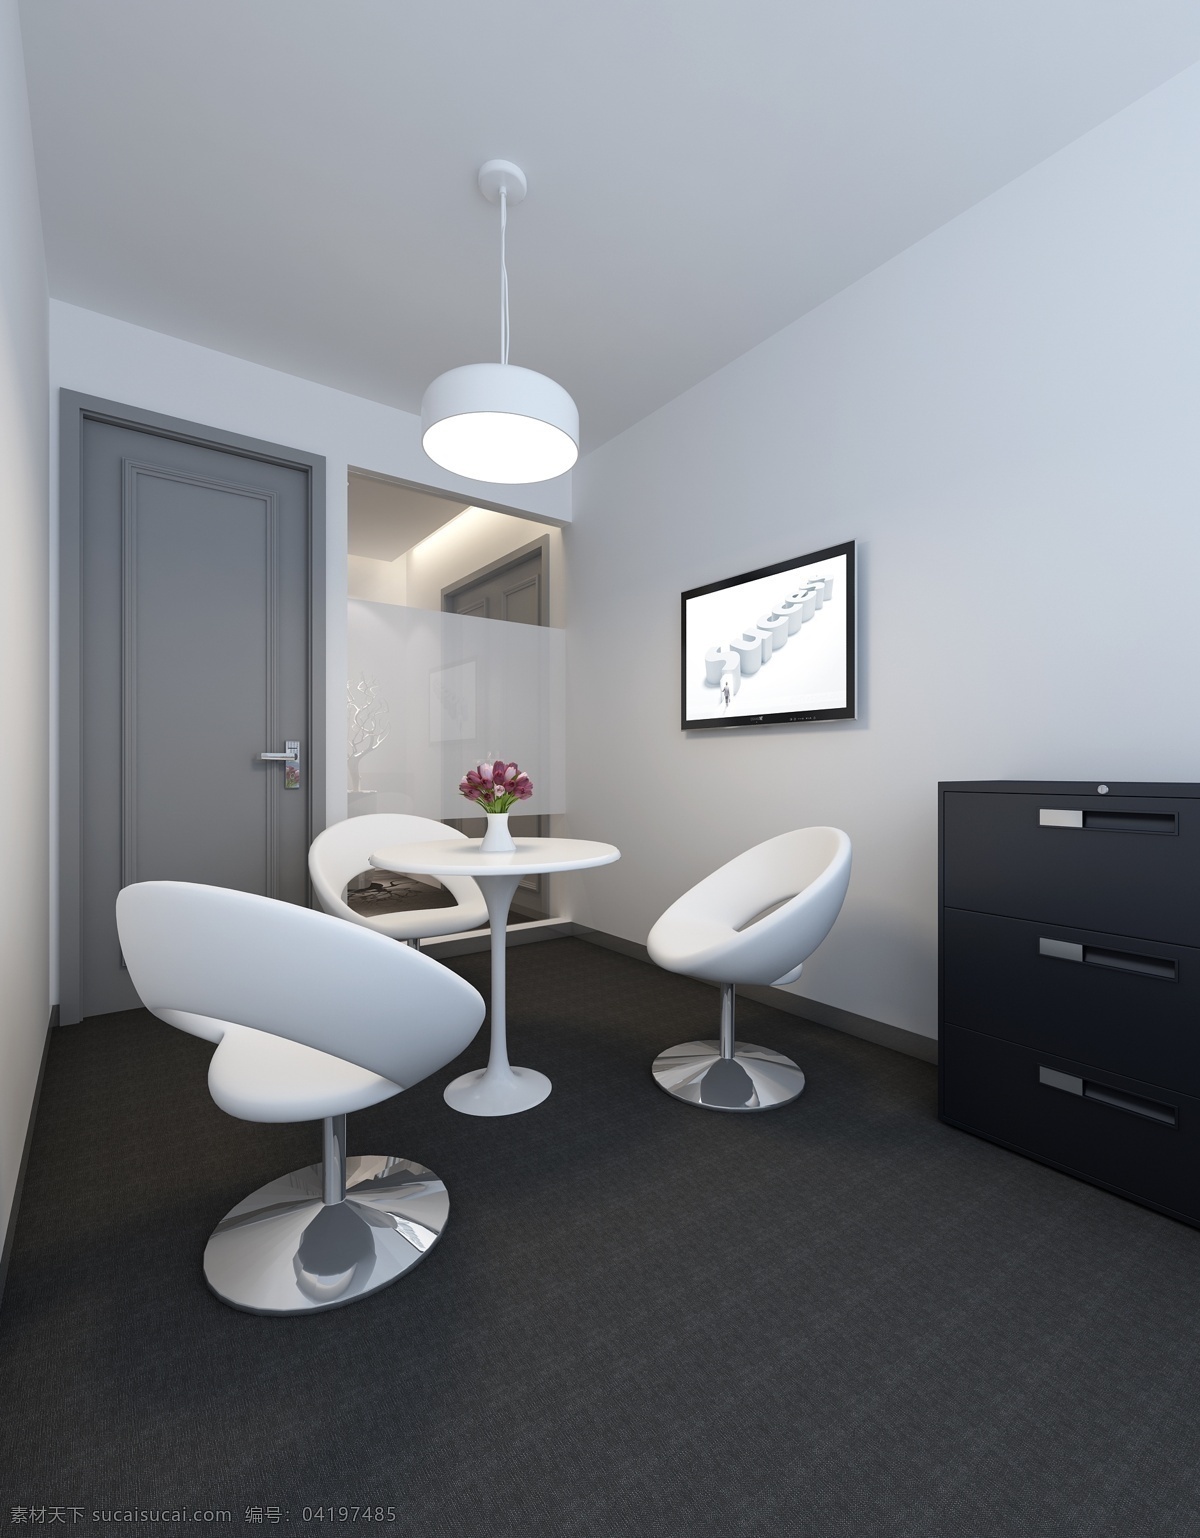 现代 简约 小型 会议室 办公室 工装 效果图 白色桌椅 深色地板 白色吊灯 深色柜子 工装装修